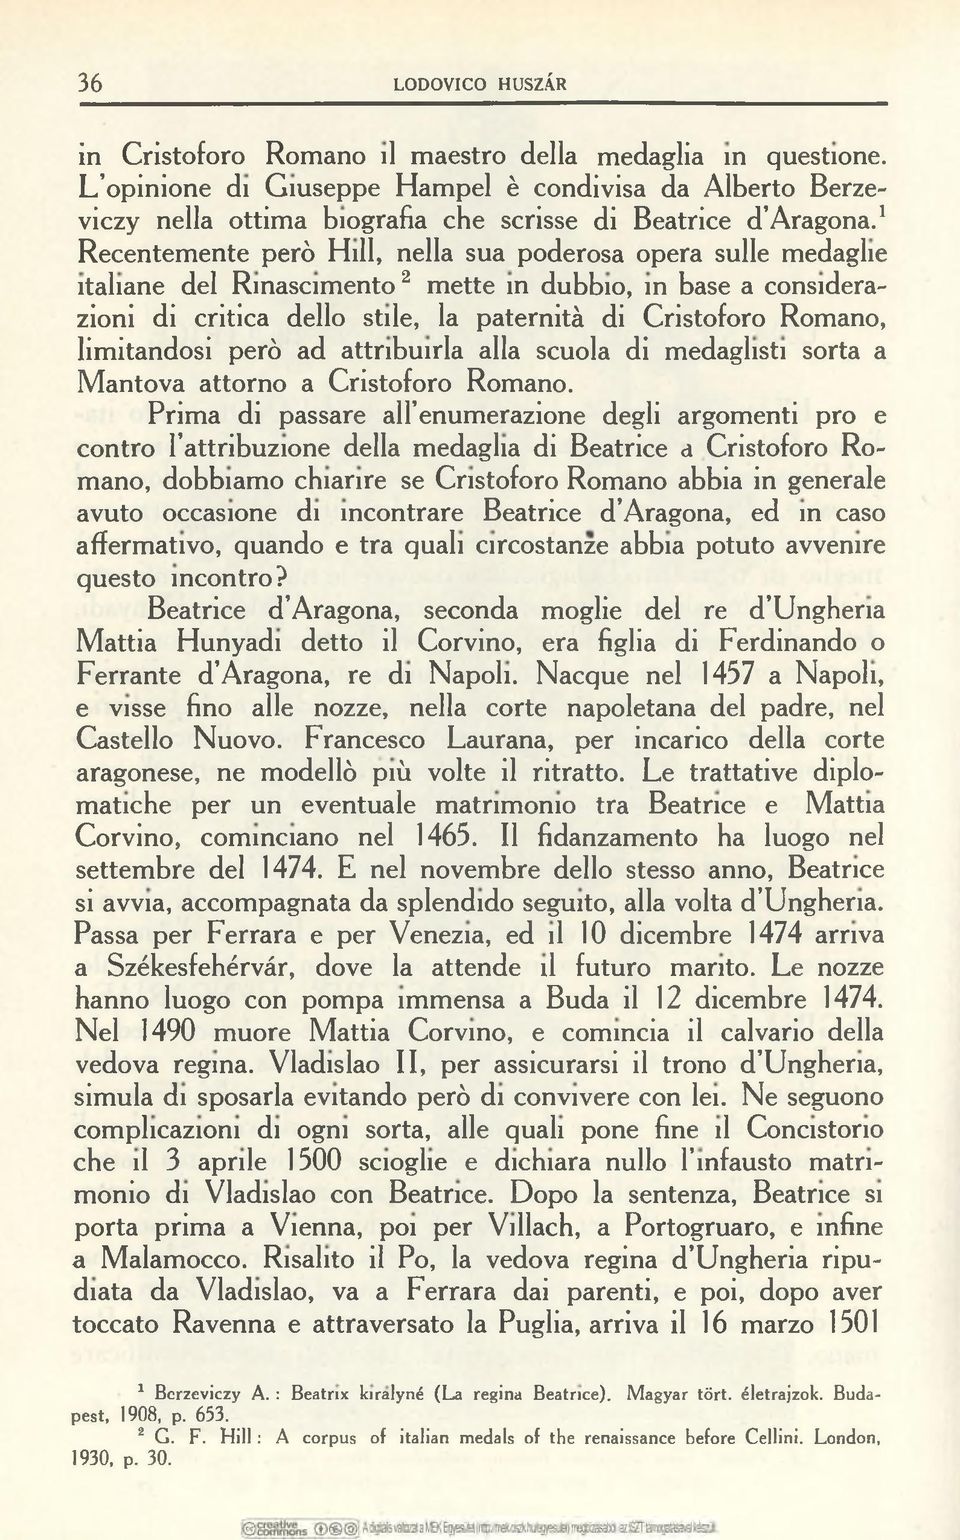 1 Recentemente però Hill, nella sua poderosa opera sulle medaglie italiane del Rinascimento2 mette in dubbio, in base a considerazioni di critica dello stile, la paternità di Cristoforo Romano,